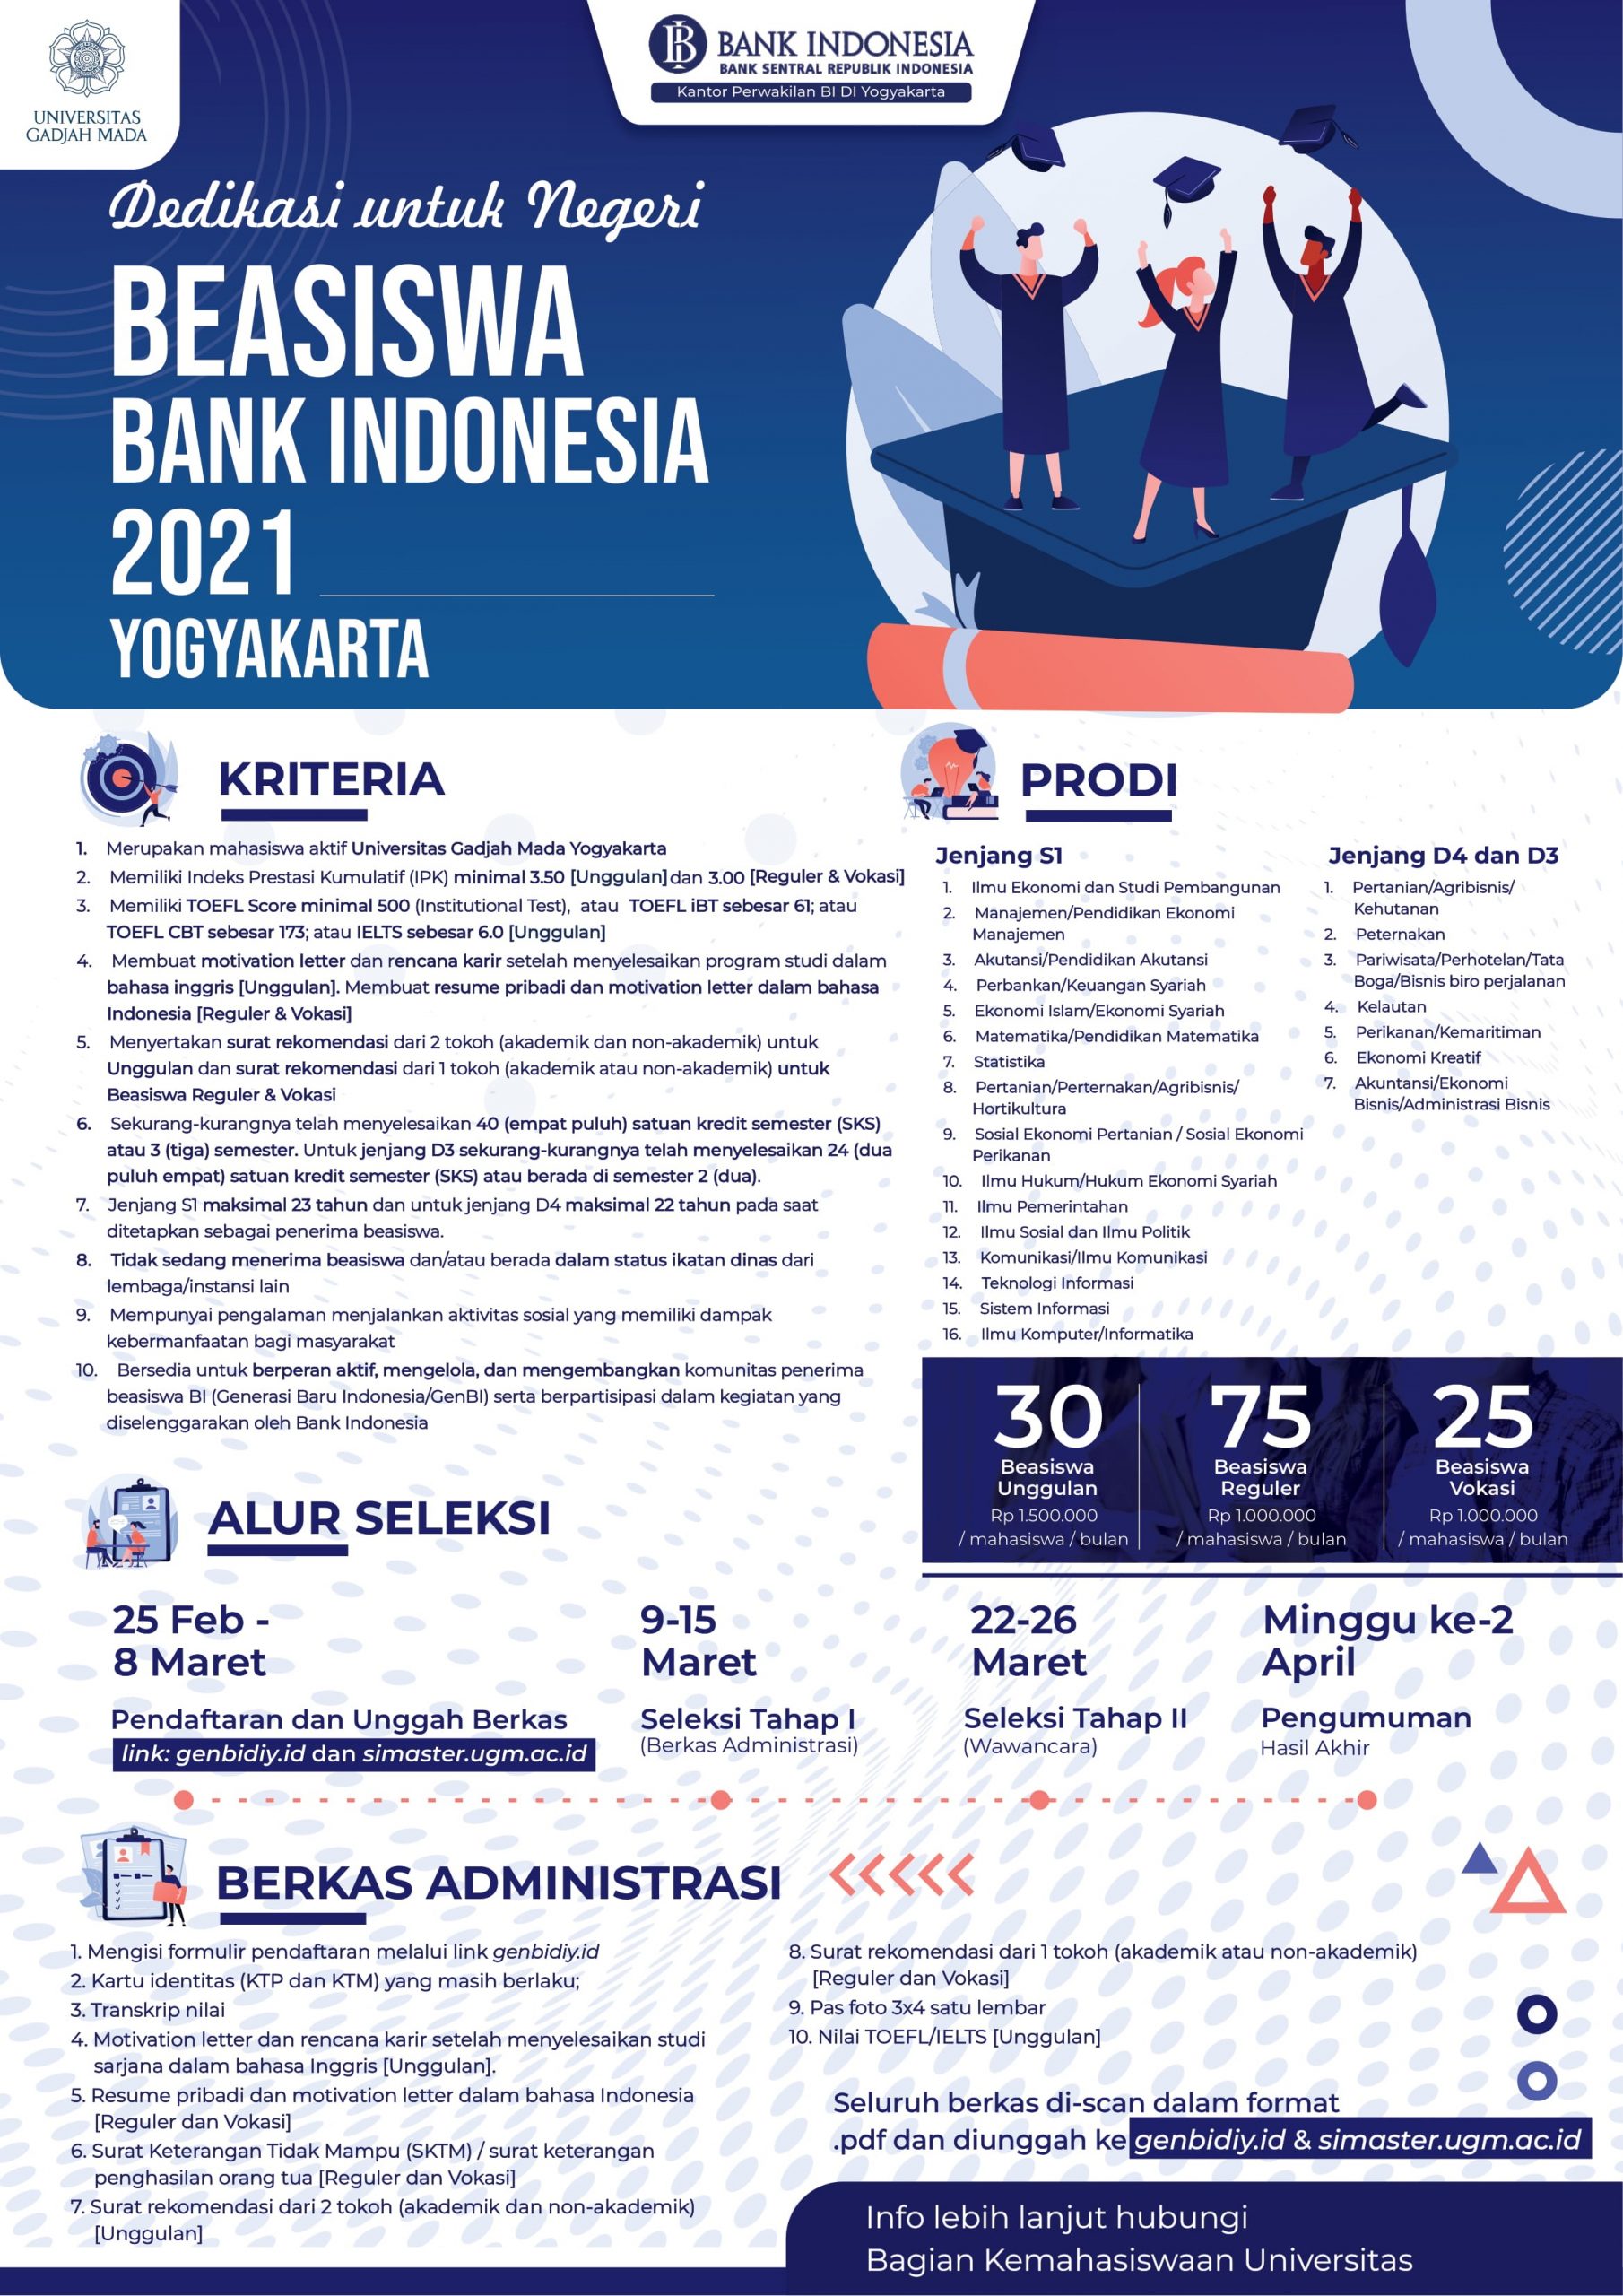 Penawaran Beasiswa Bank Indonesia 2021 – Direktorat Kemahasiswaan